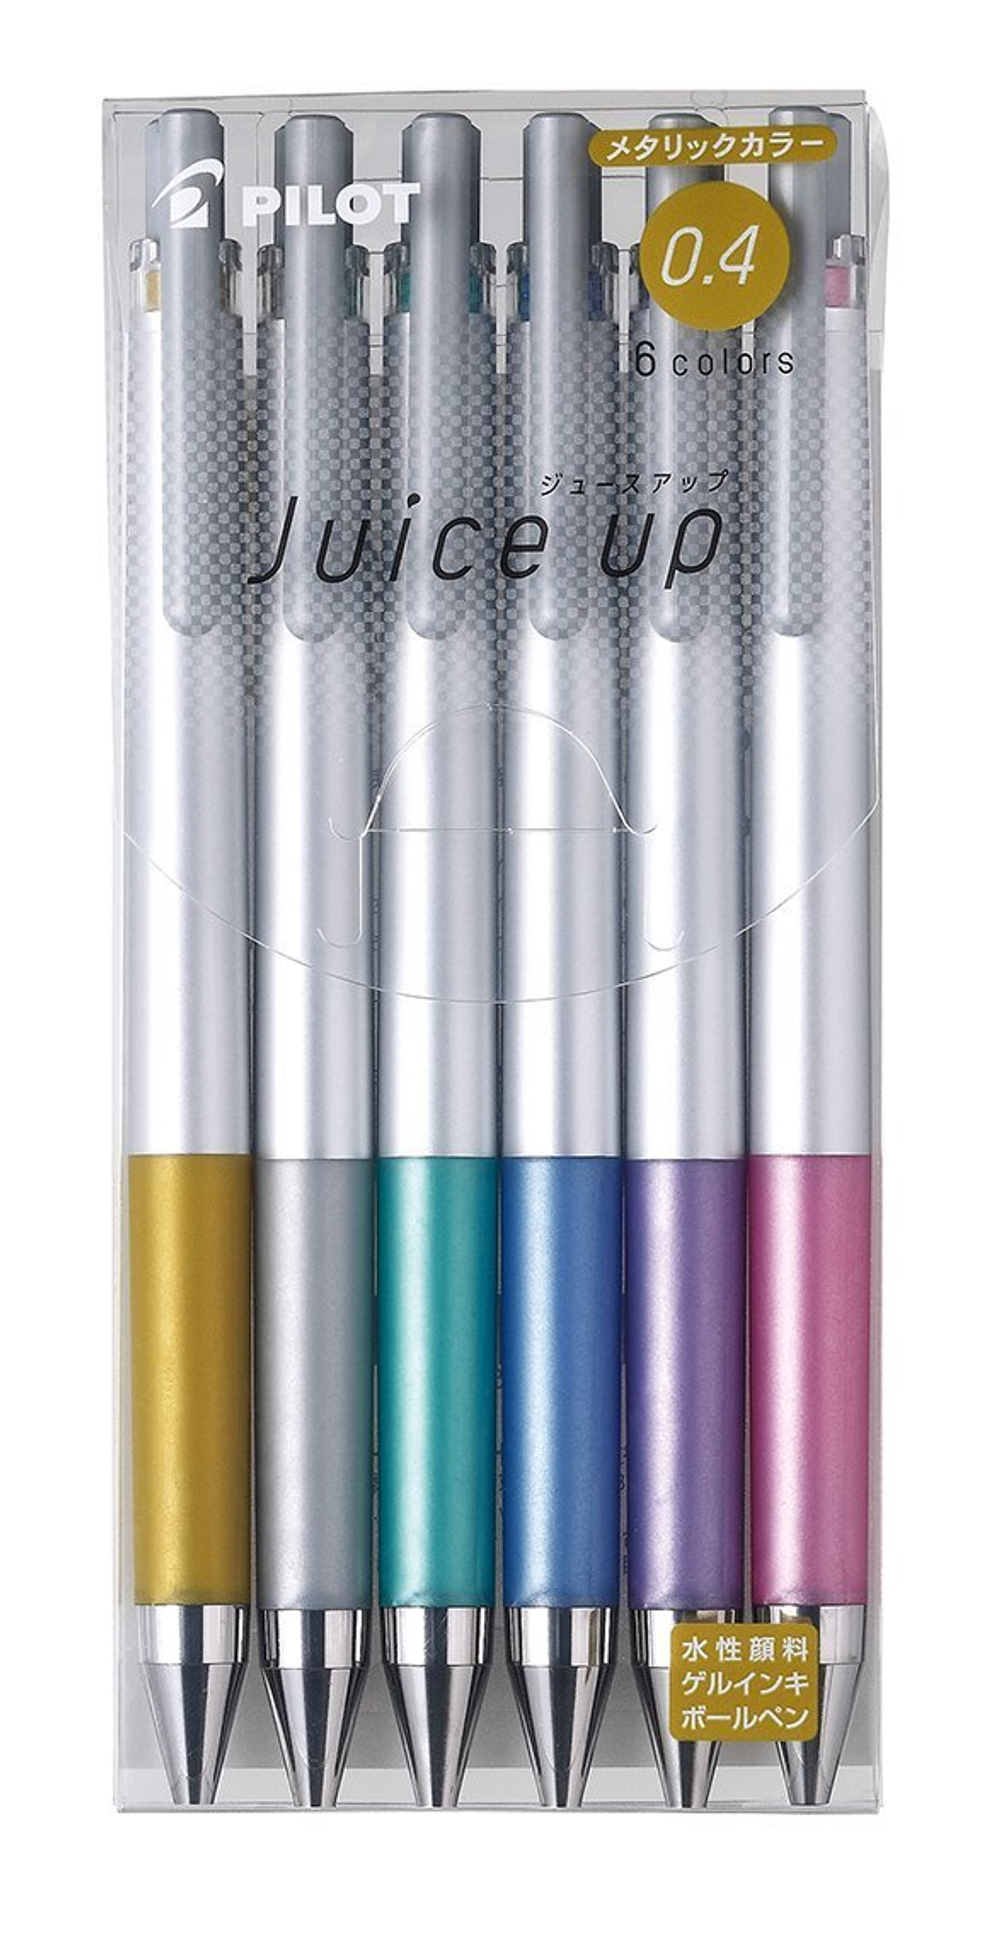 Гелевые ручки Pilot Juice Up 0,4 мм (металлические оттенки, набор 6 шт.)